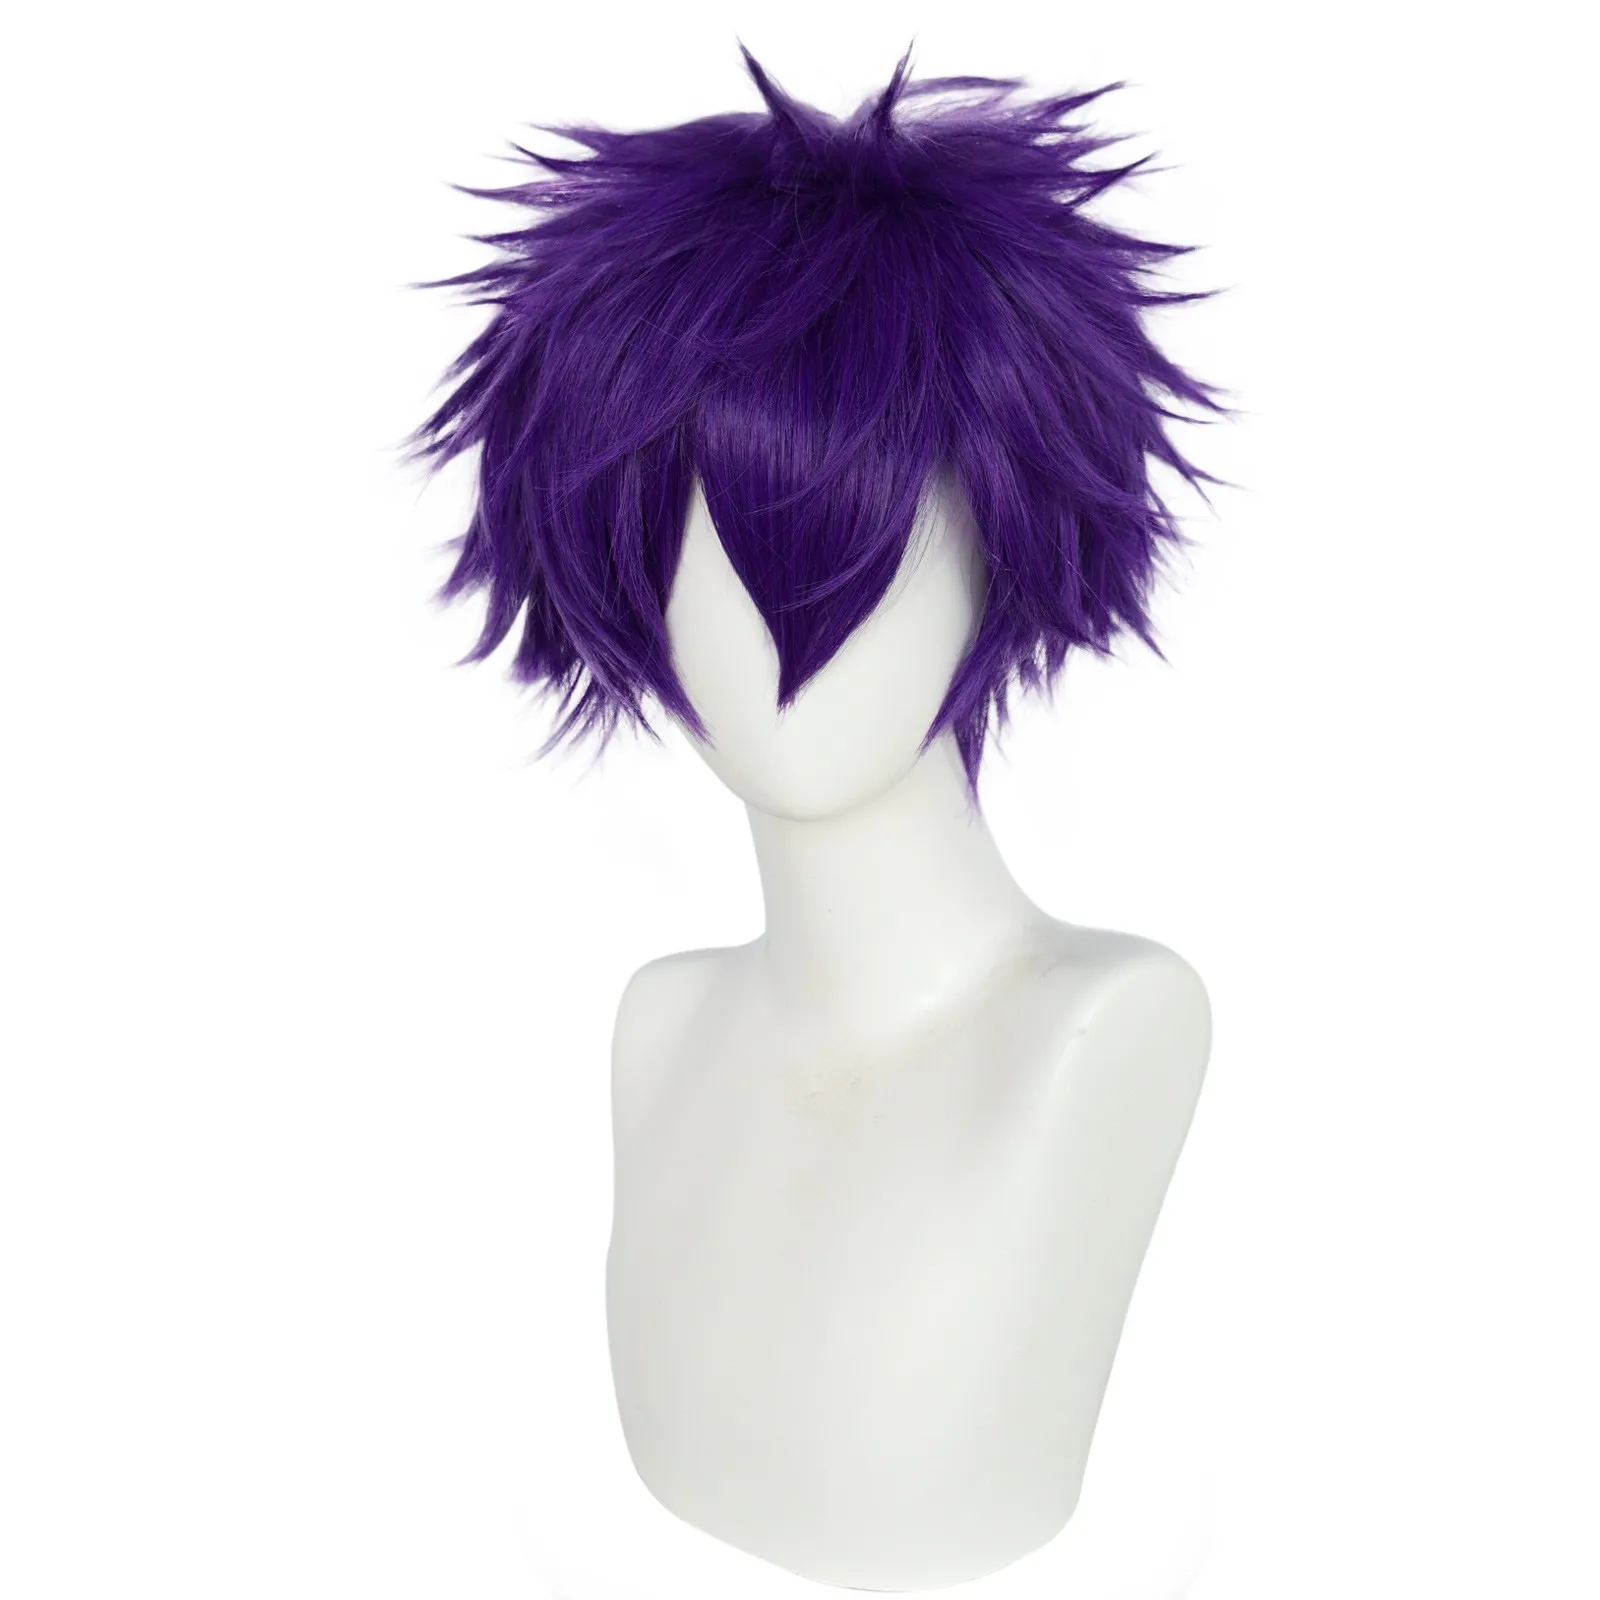 10-дюймовый синтетический короткий фиолетовый прямой мужской парик для косплея на Хэллоуин, Рождество, Школу, День Благодарения